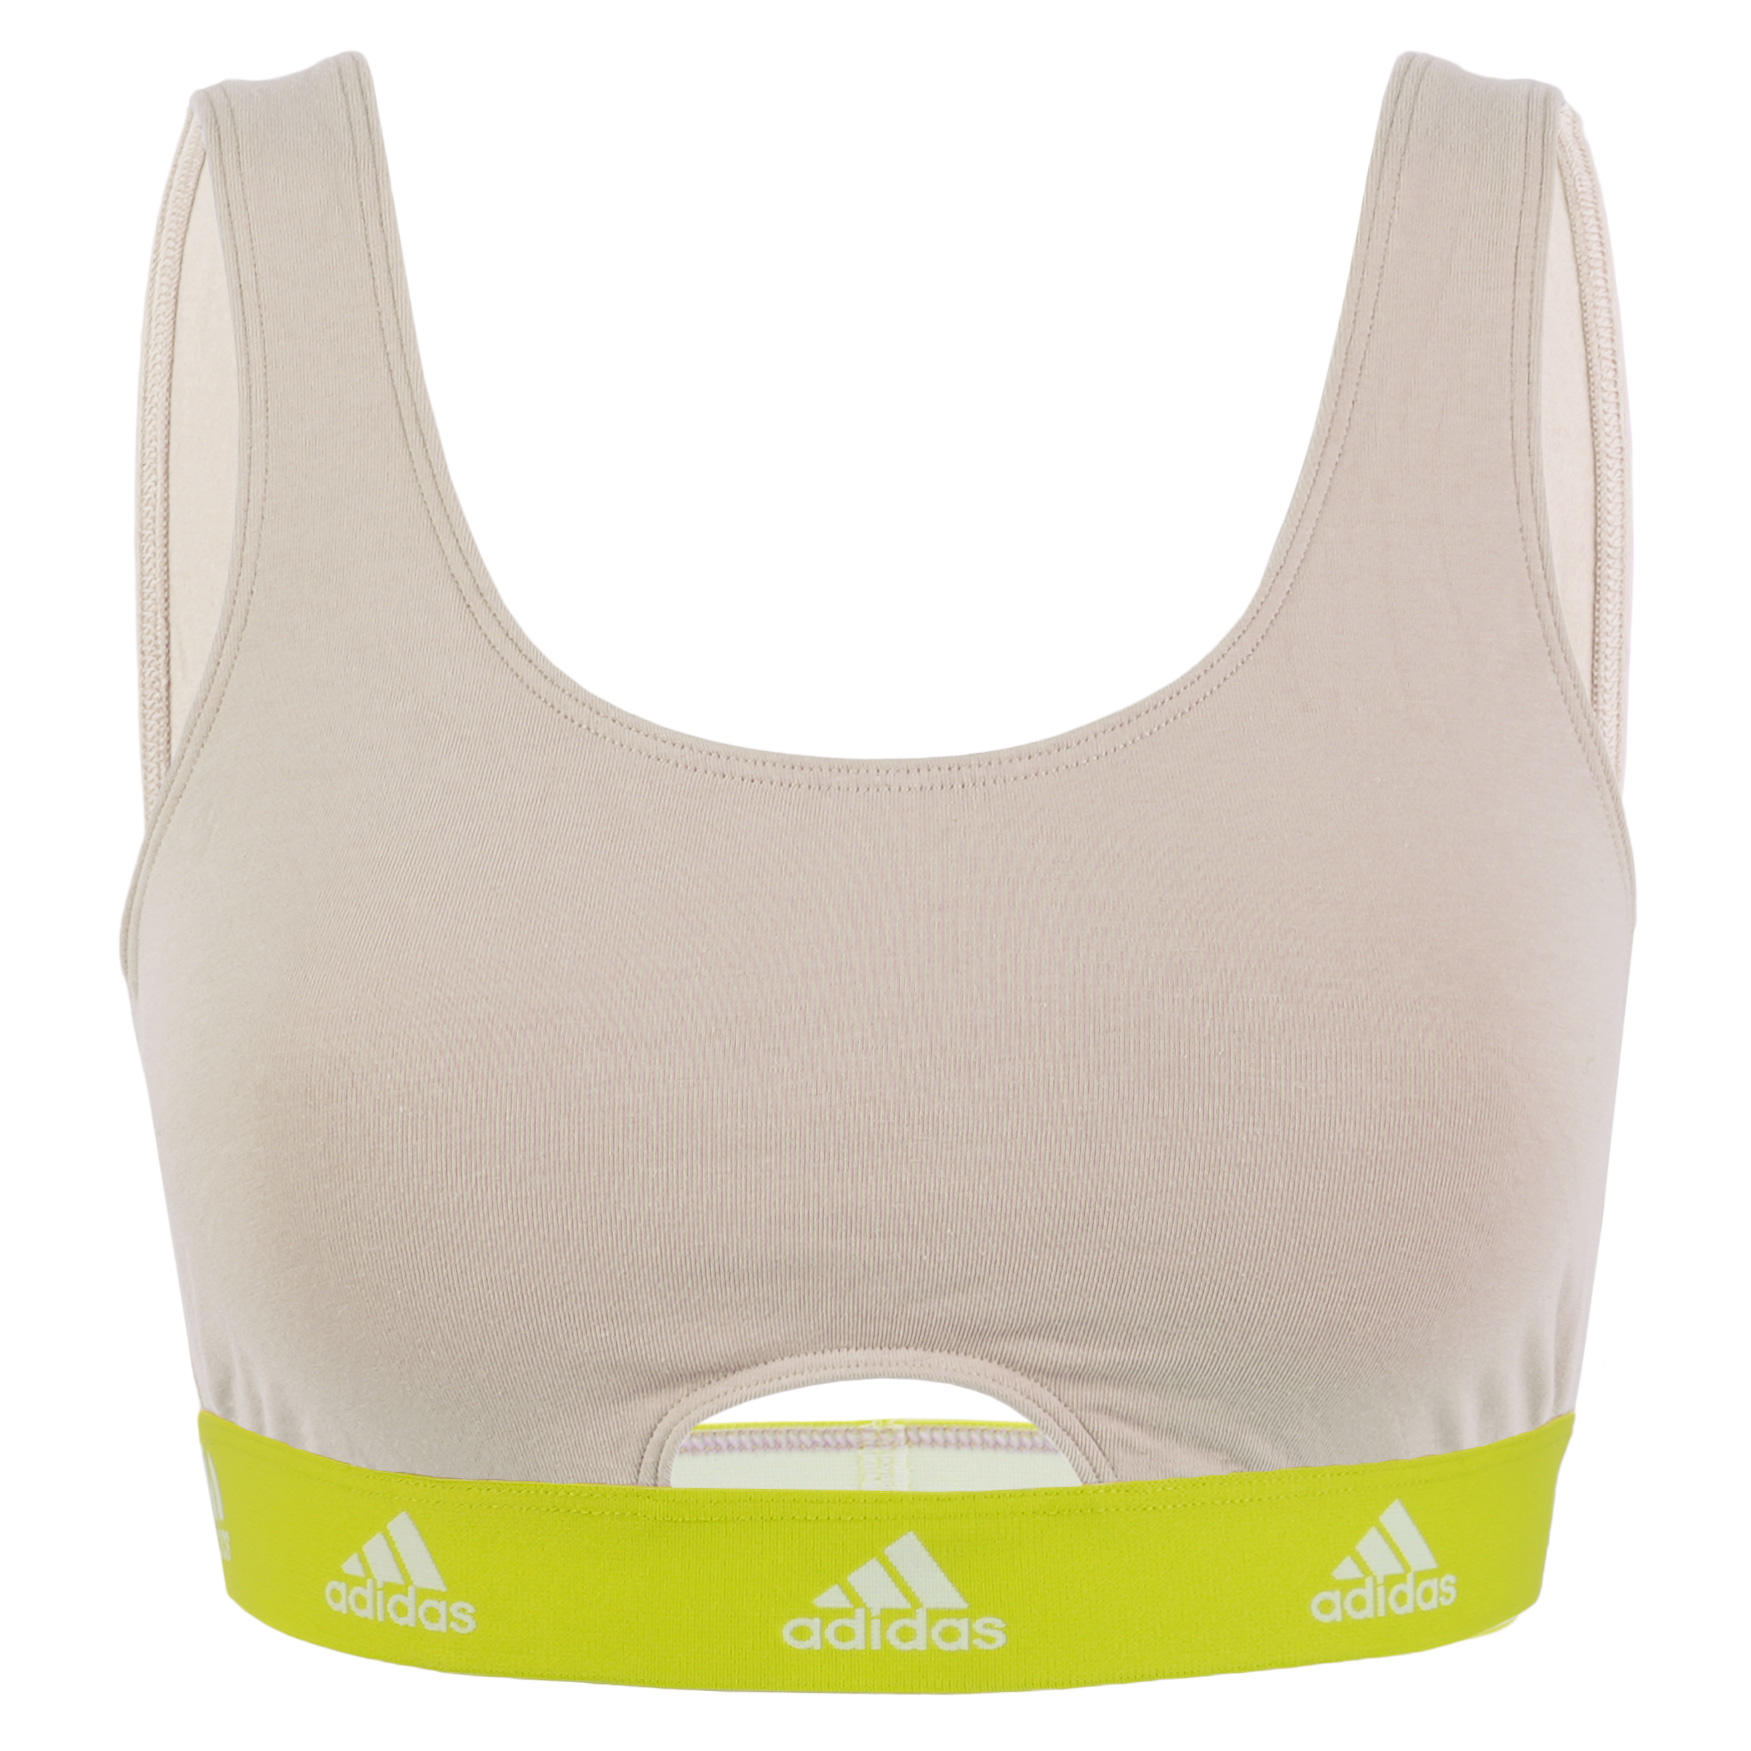 Produktbild von adidas Sports Underwear Scoop Bralette Top Damen - 409-beige